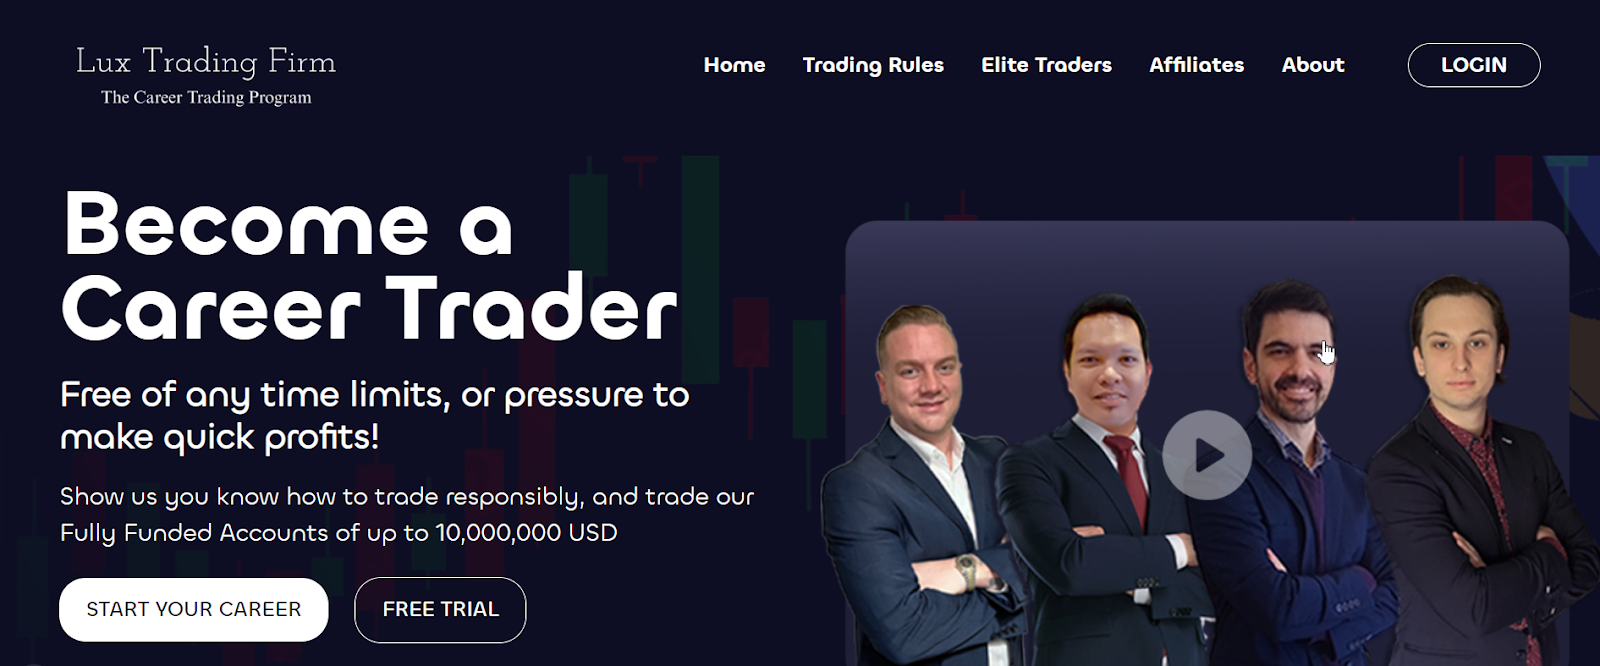 Lux Trading Firm İncelemesi - Ücretsiz deneme